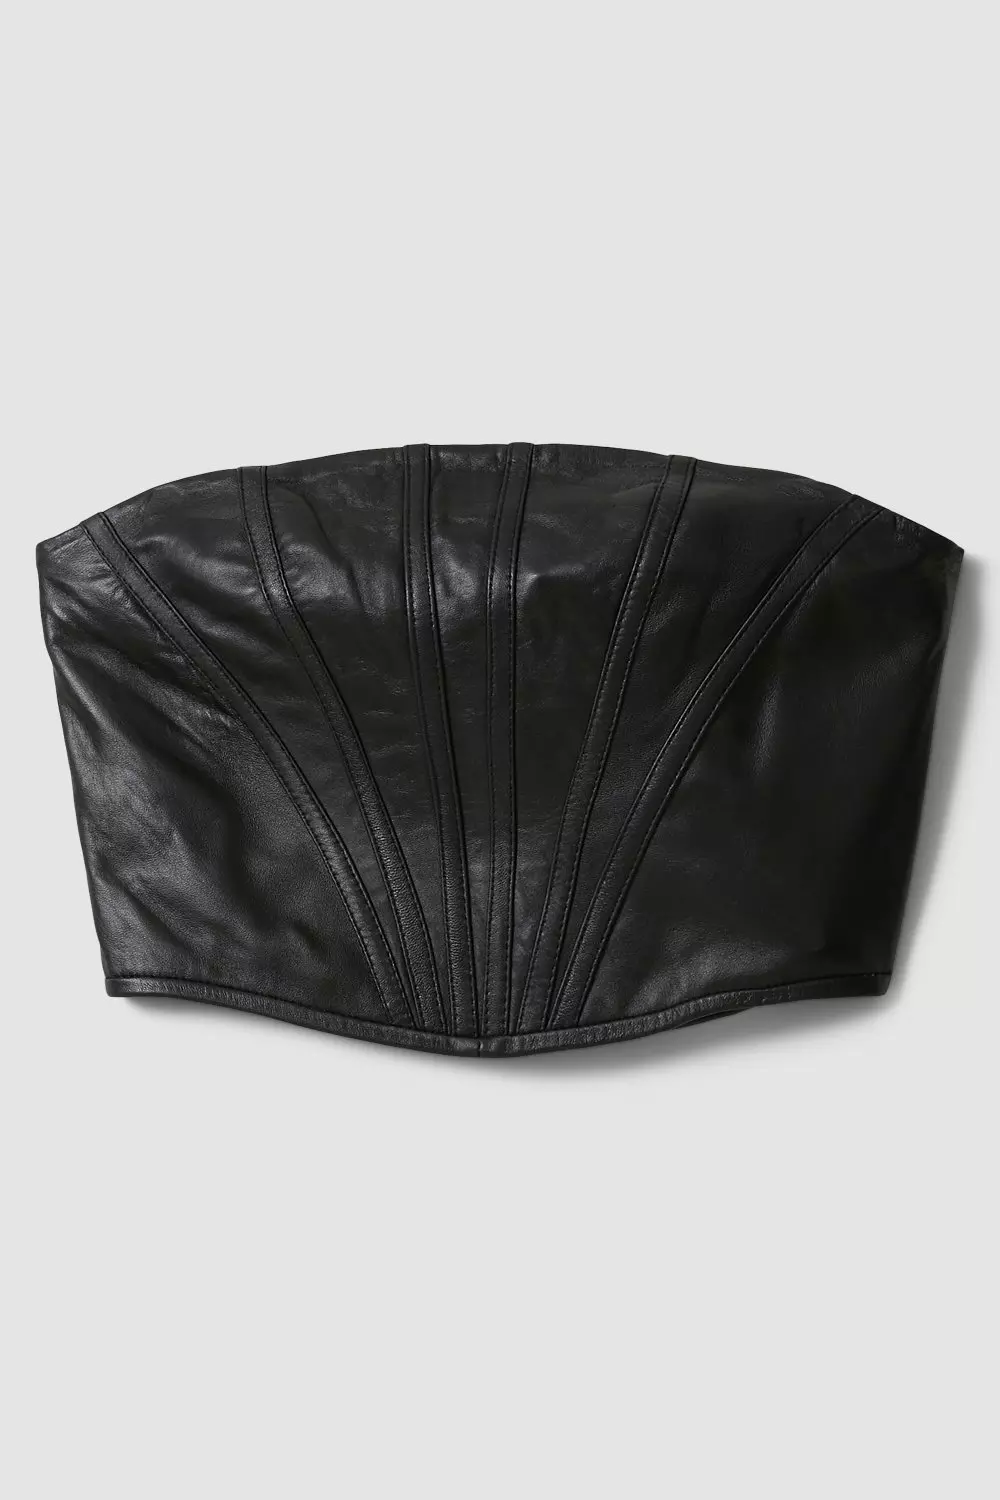 Lydia Millen Leather Corset Top | Karen Millen